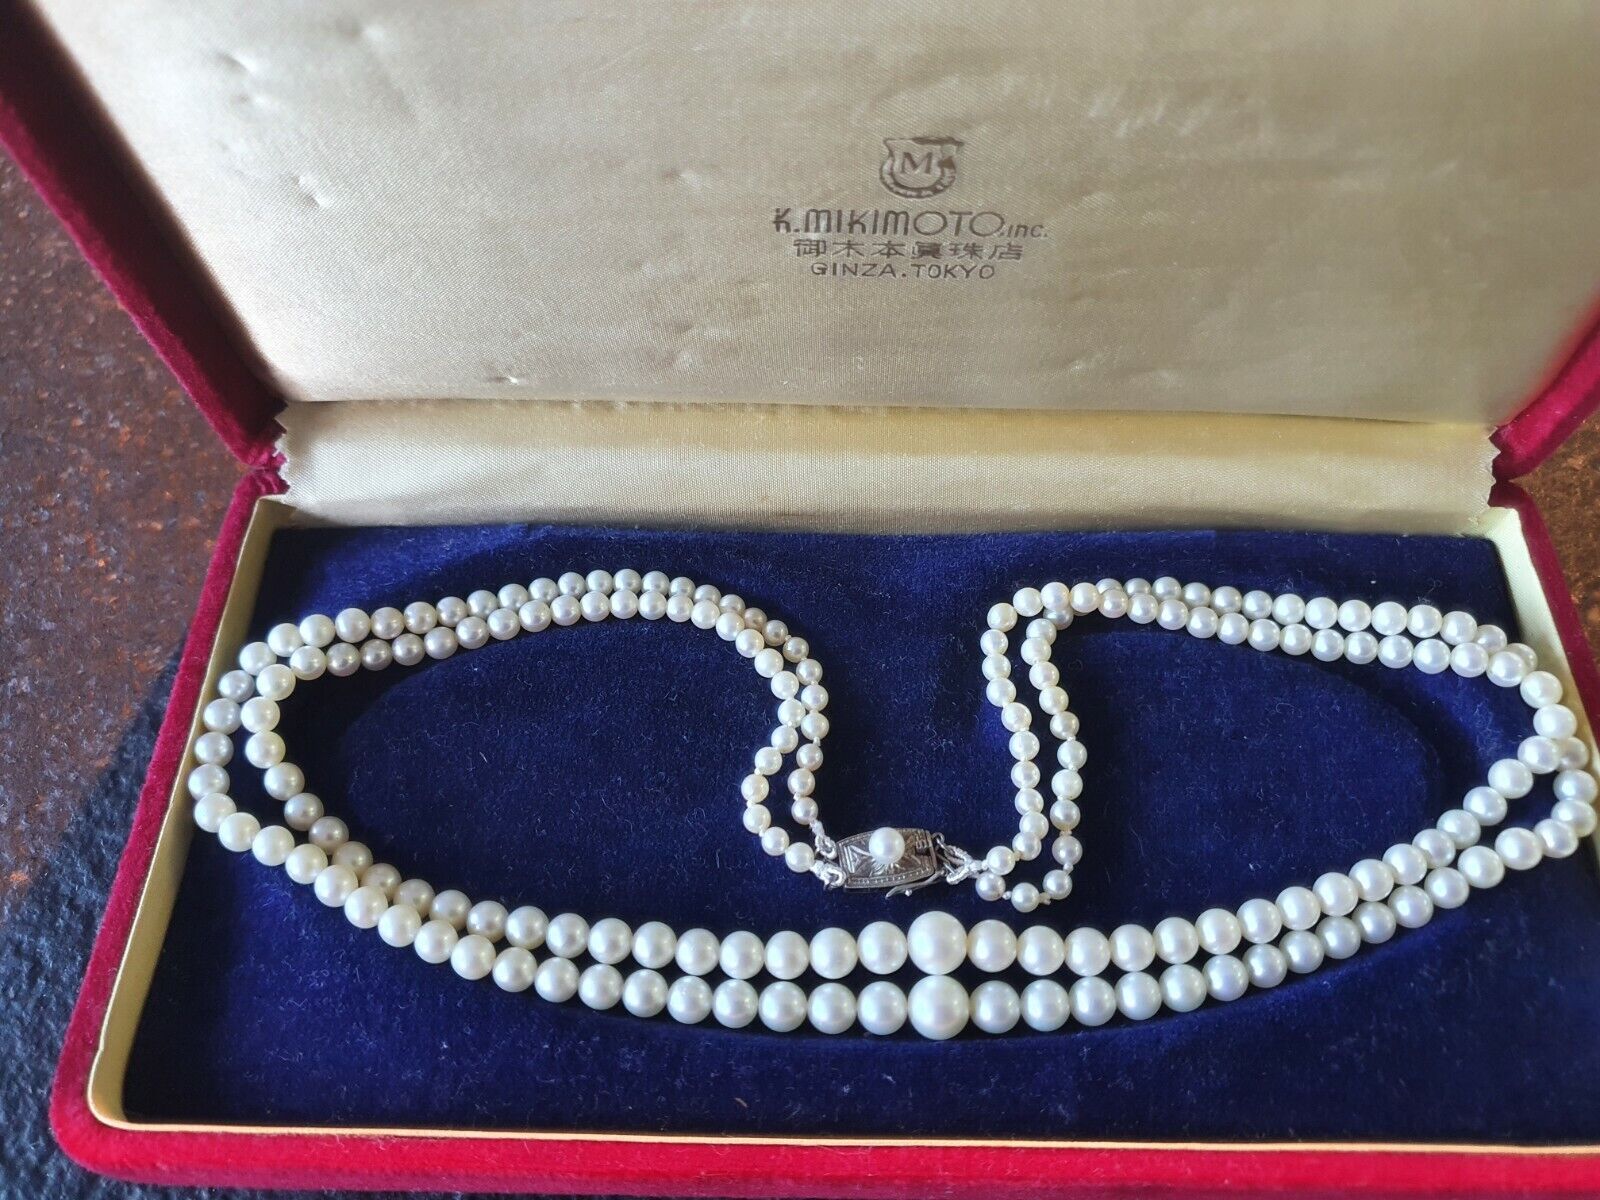 Collier de perles Mikimoto, fermoir argent.